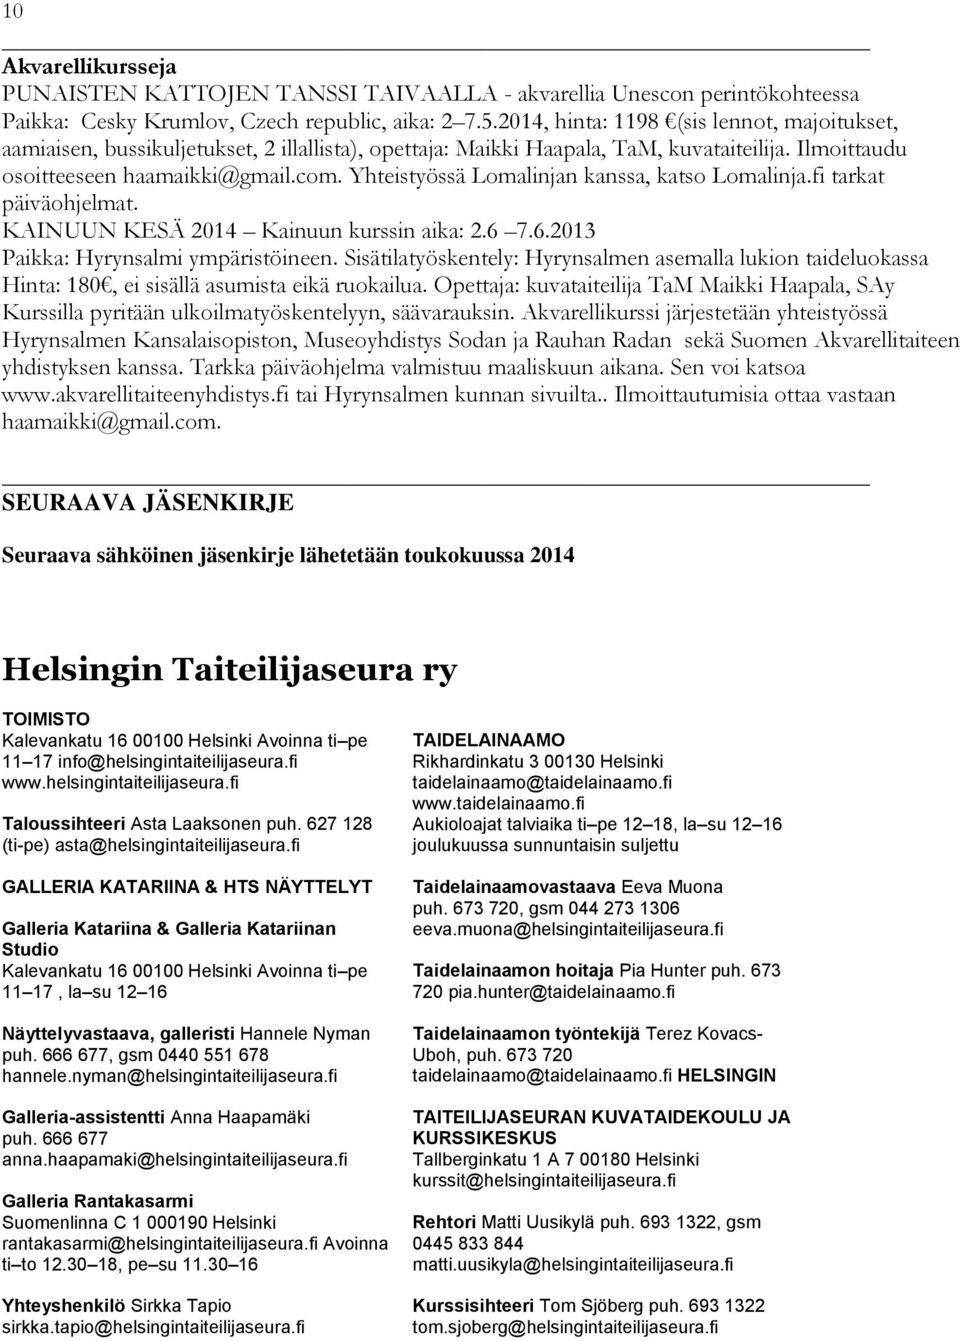 Yhteistyössä Lomalinjan kanssa, katso Lomalinja.fi tarkat päiväohjelmat. KAINUUN KESÄ 2014 Kainuun kurssin aika: 2.6 7.6.2013 Paikka: Hyrynsalmi ympäristöineen.